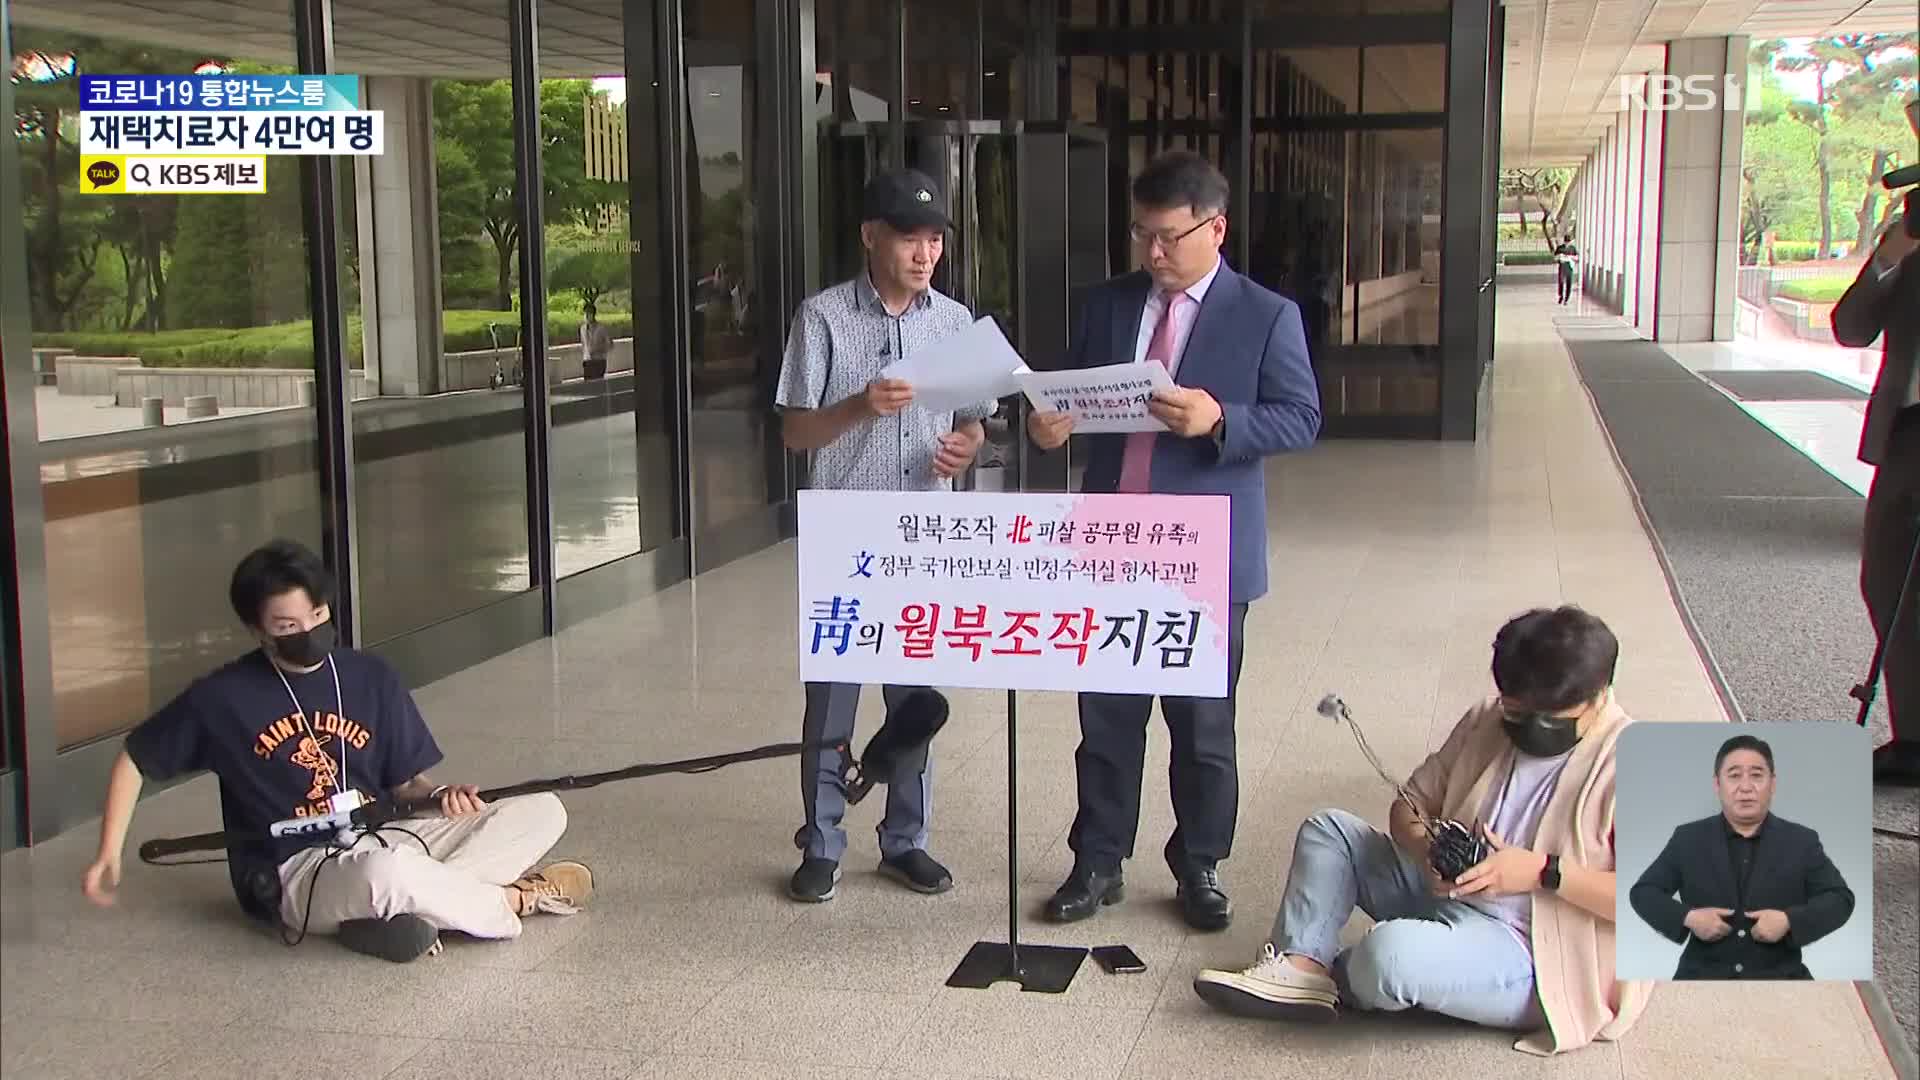 ‘피살 공무원’ 유족, 서훈 등 직권남용 혐의 고발